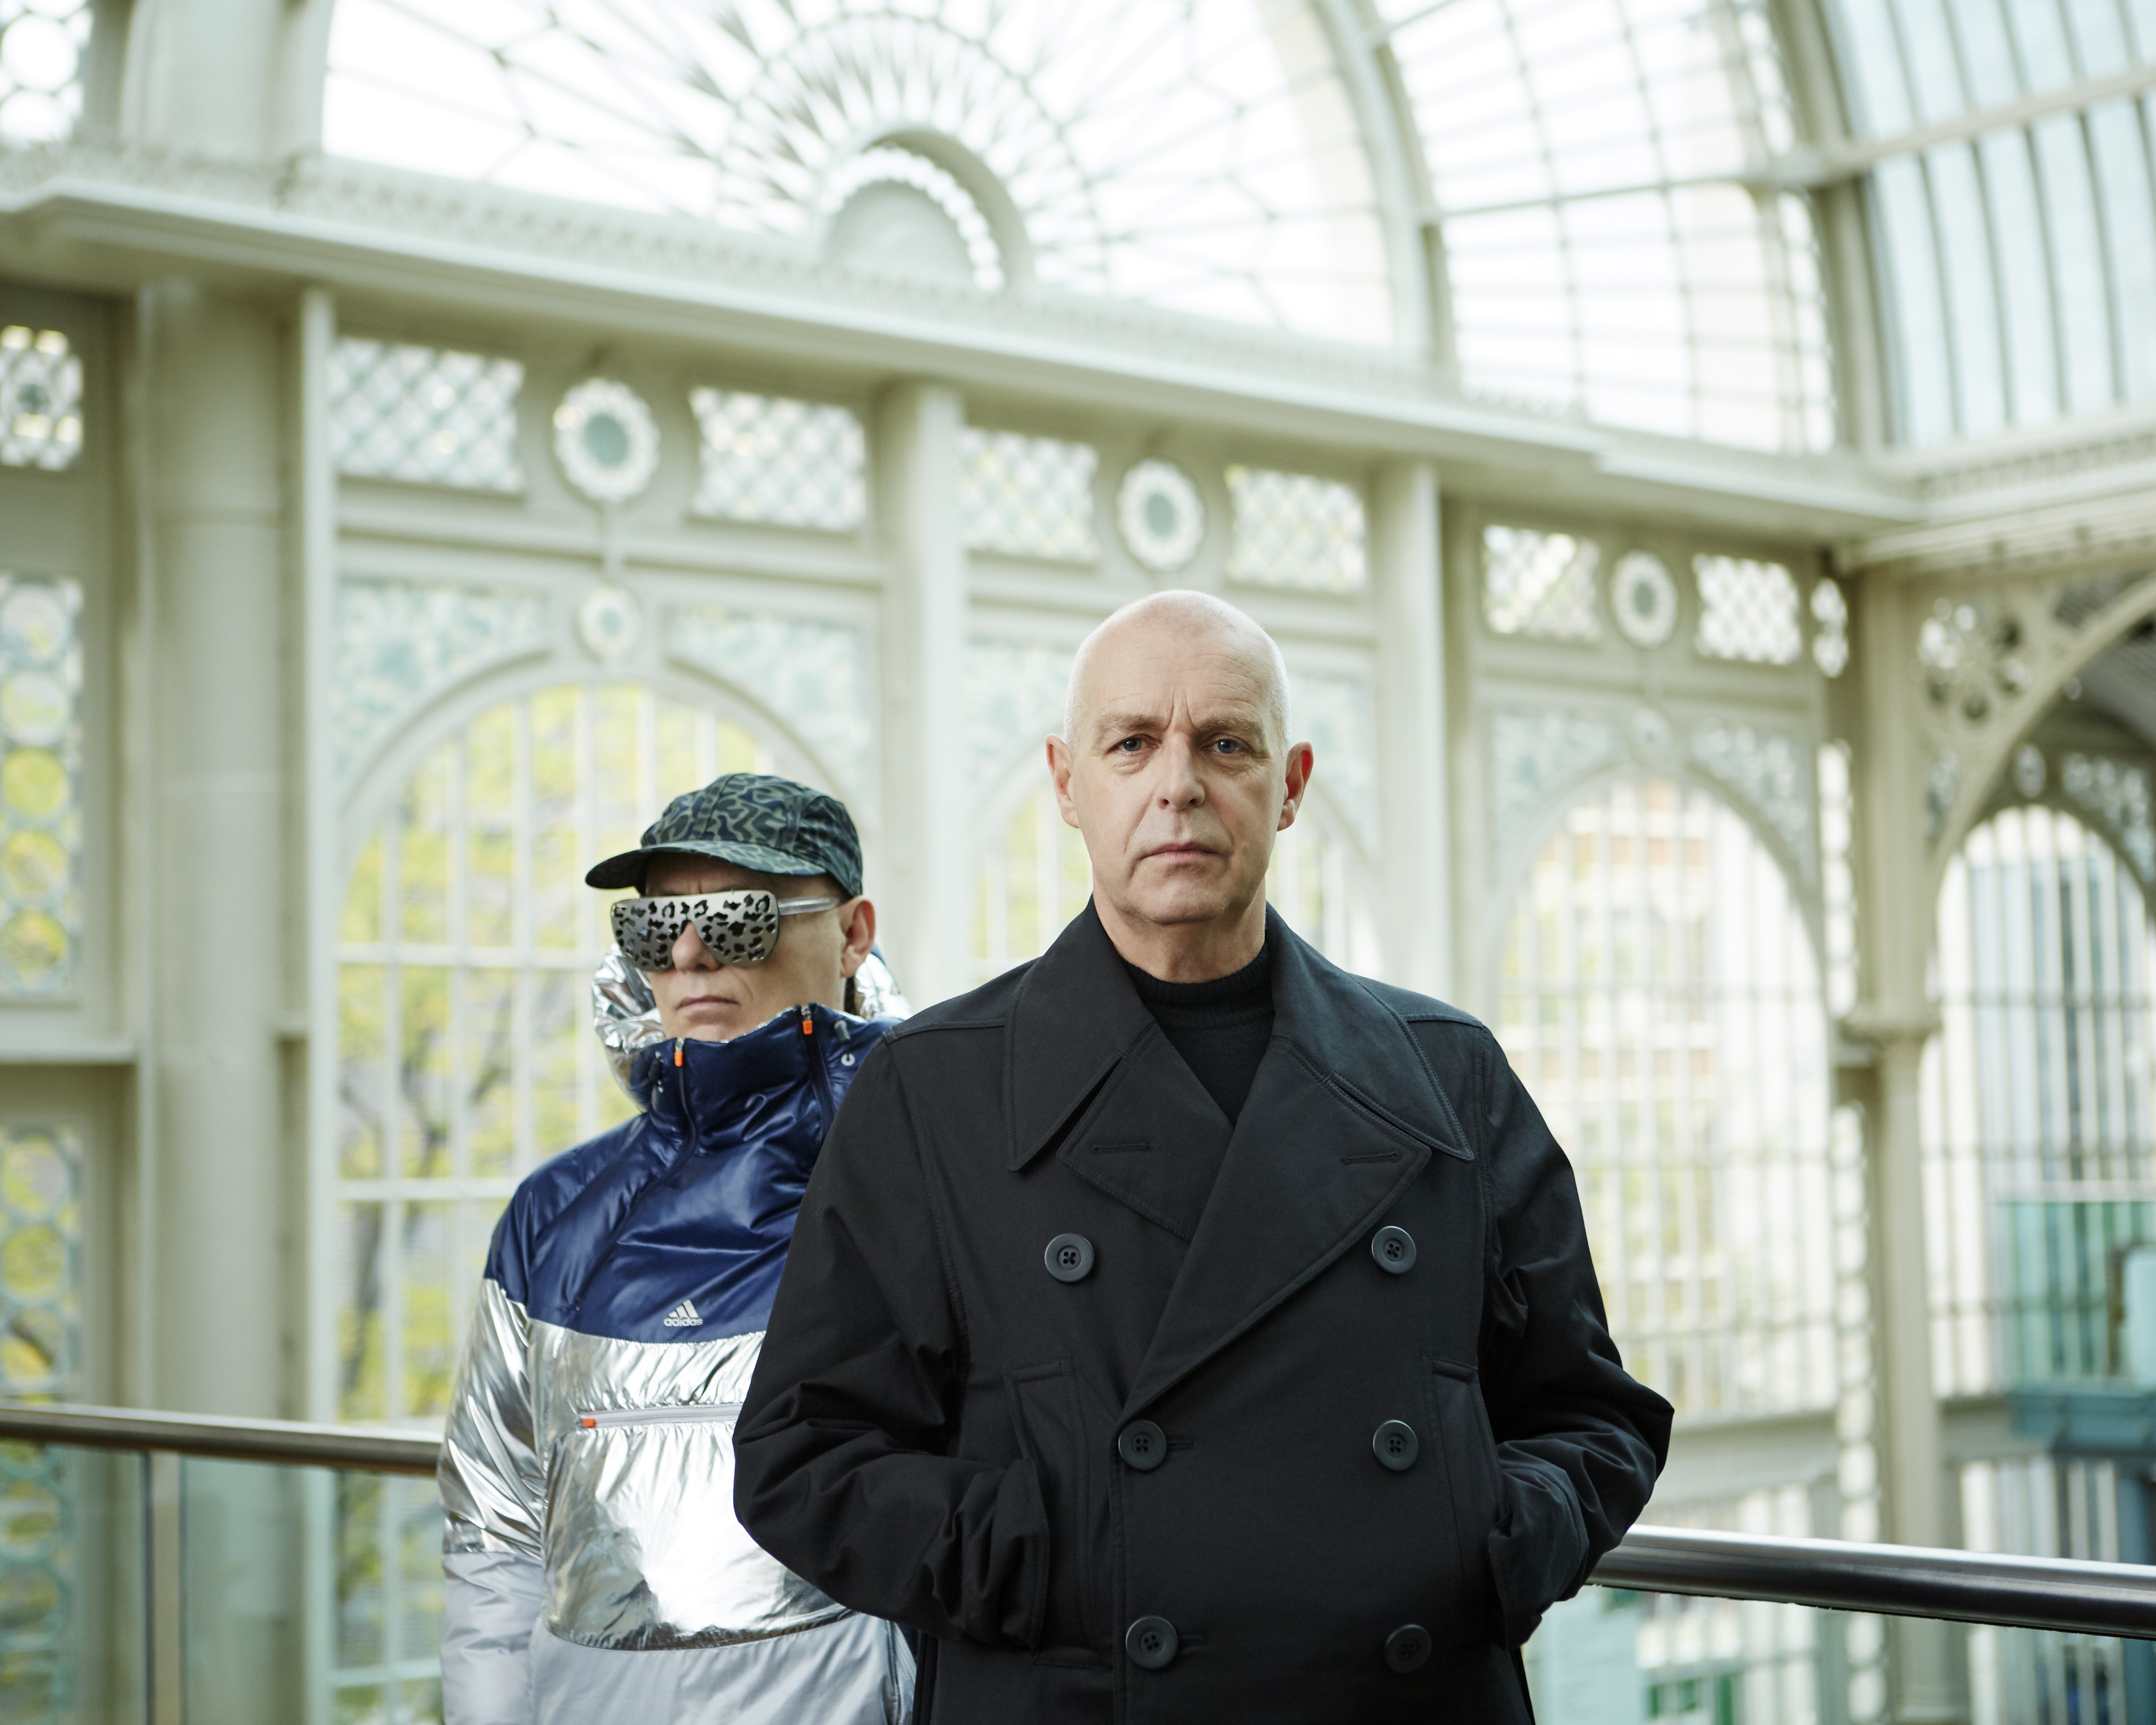 Pet Shop Boys - Agent, Manager, Publicist Contact Info